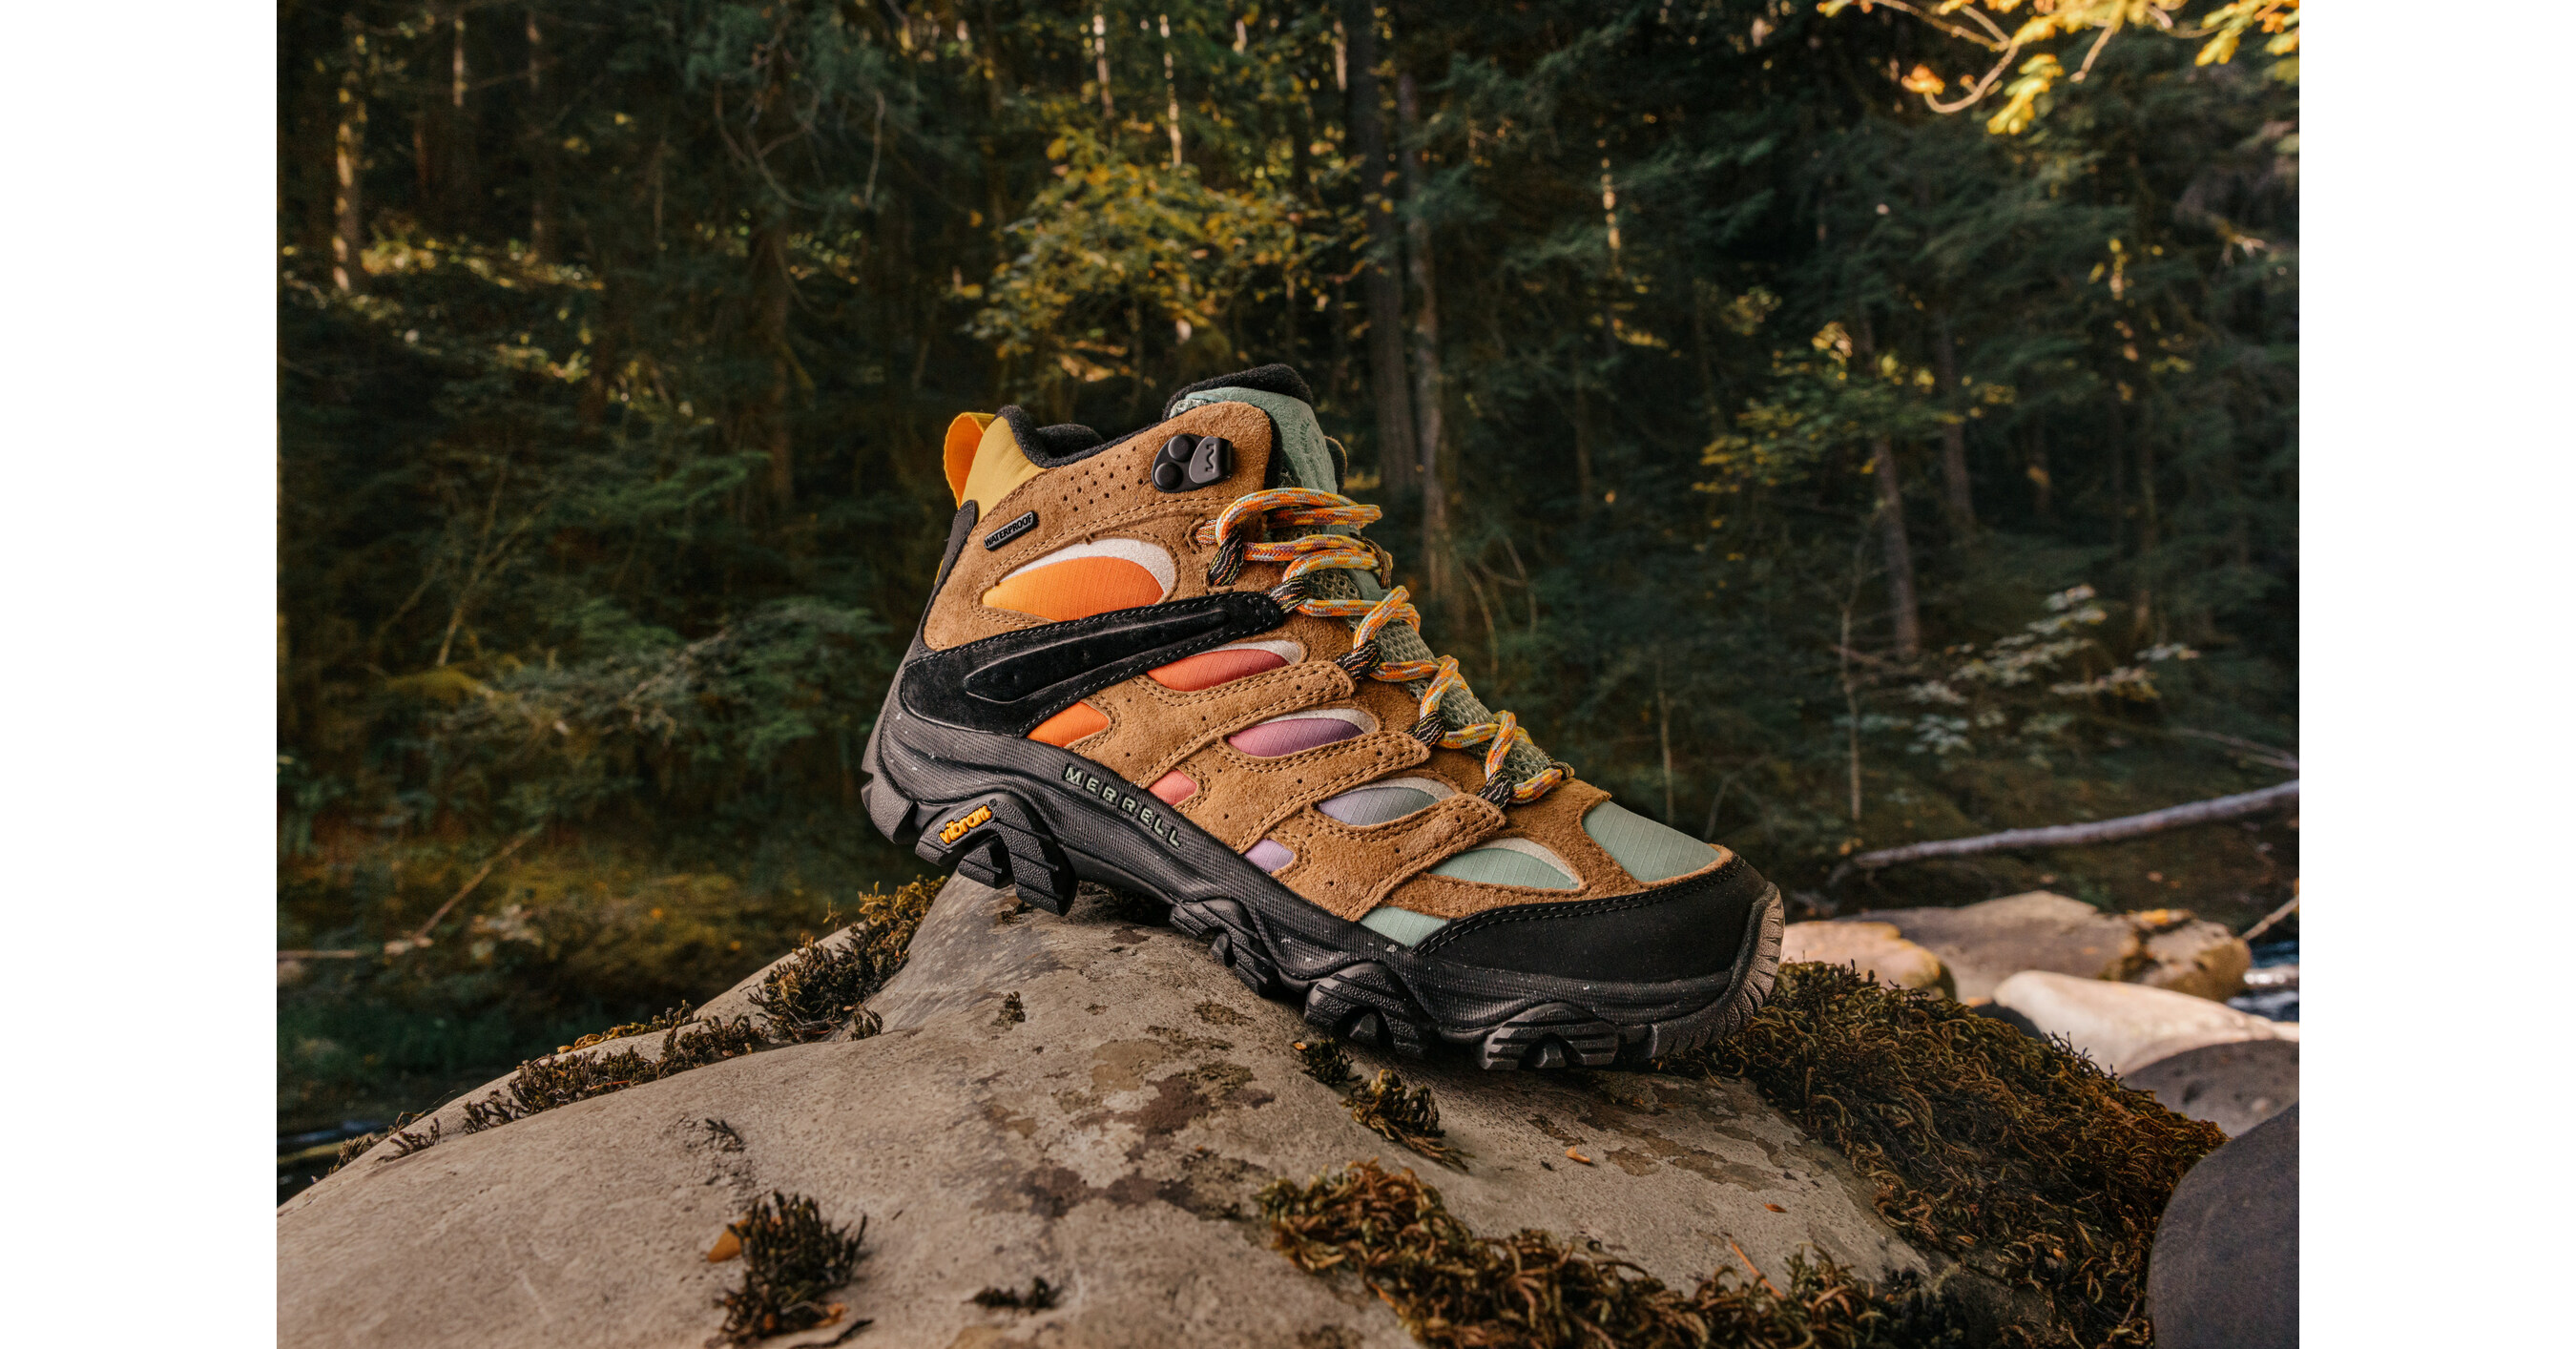 Merrell Canada: Hiking & Outdoor Footwear